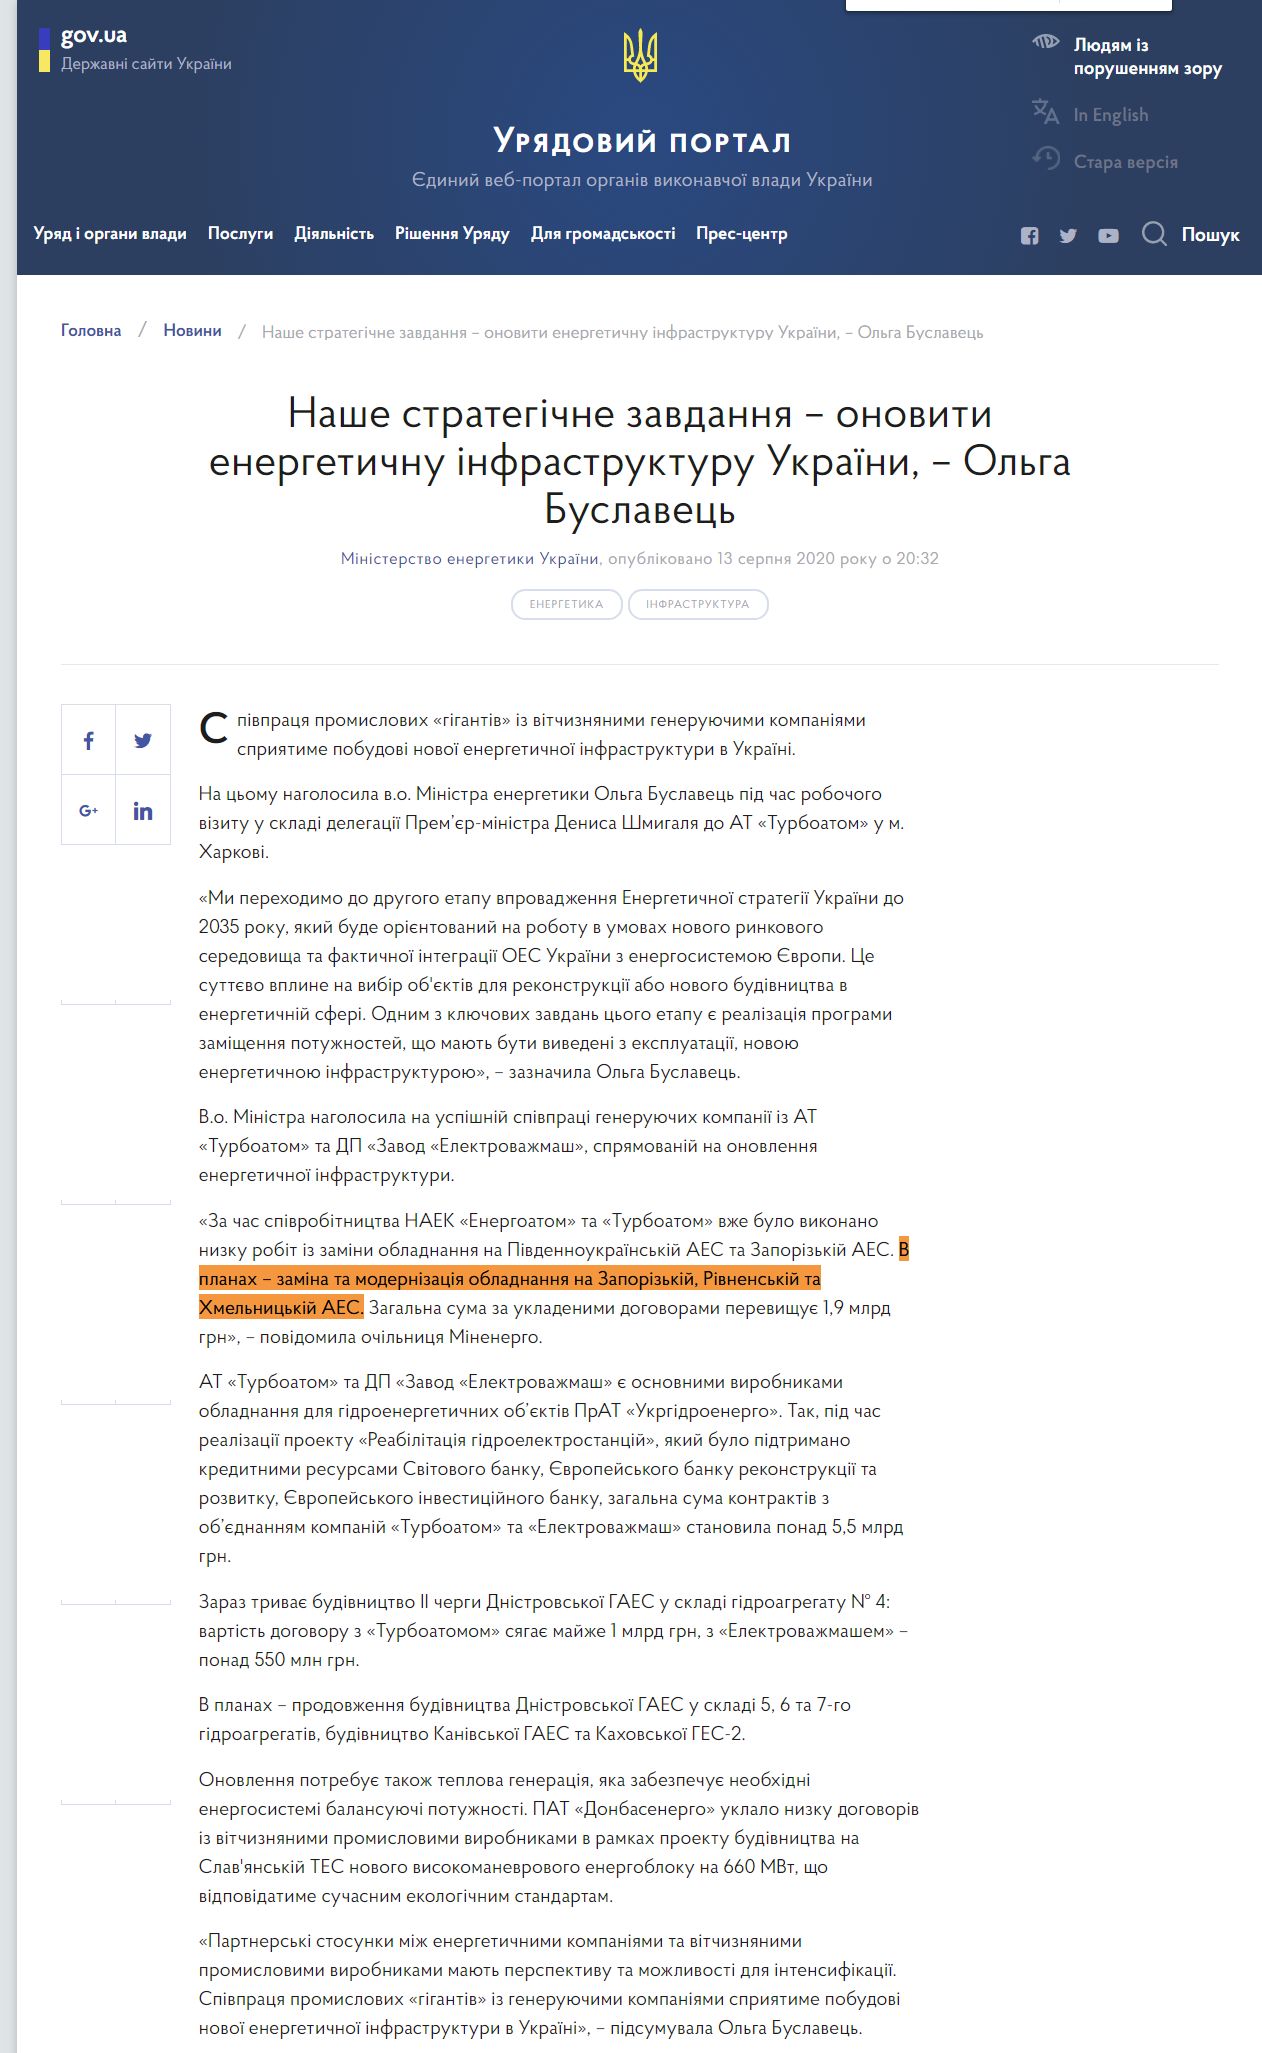 https://www.kmu.gov.ua/news/nashe-strategichne-zavdannya-onoviti-energetichnu-infrastrukturu-ukrayini-olga-buslavec